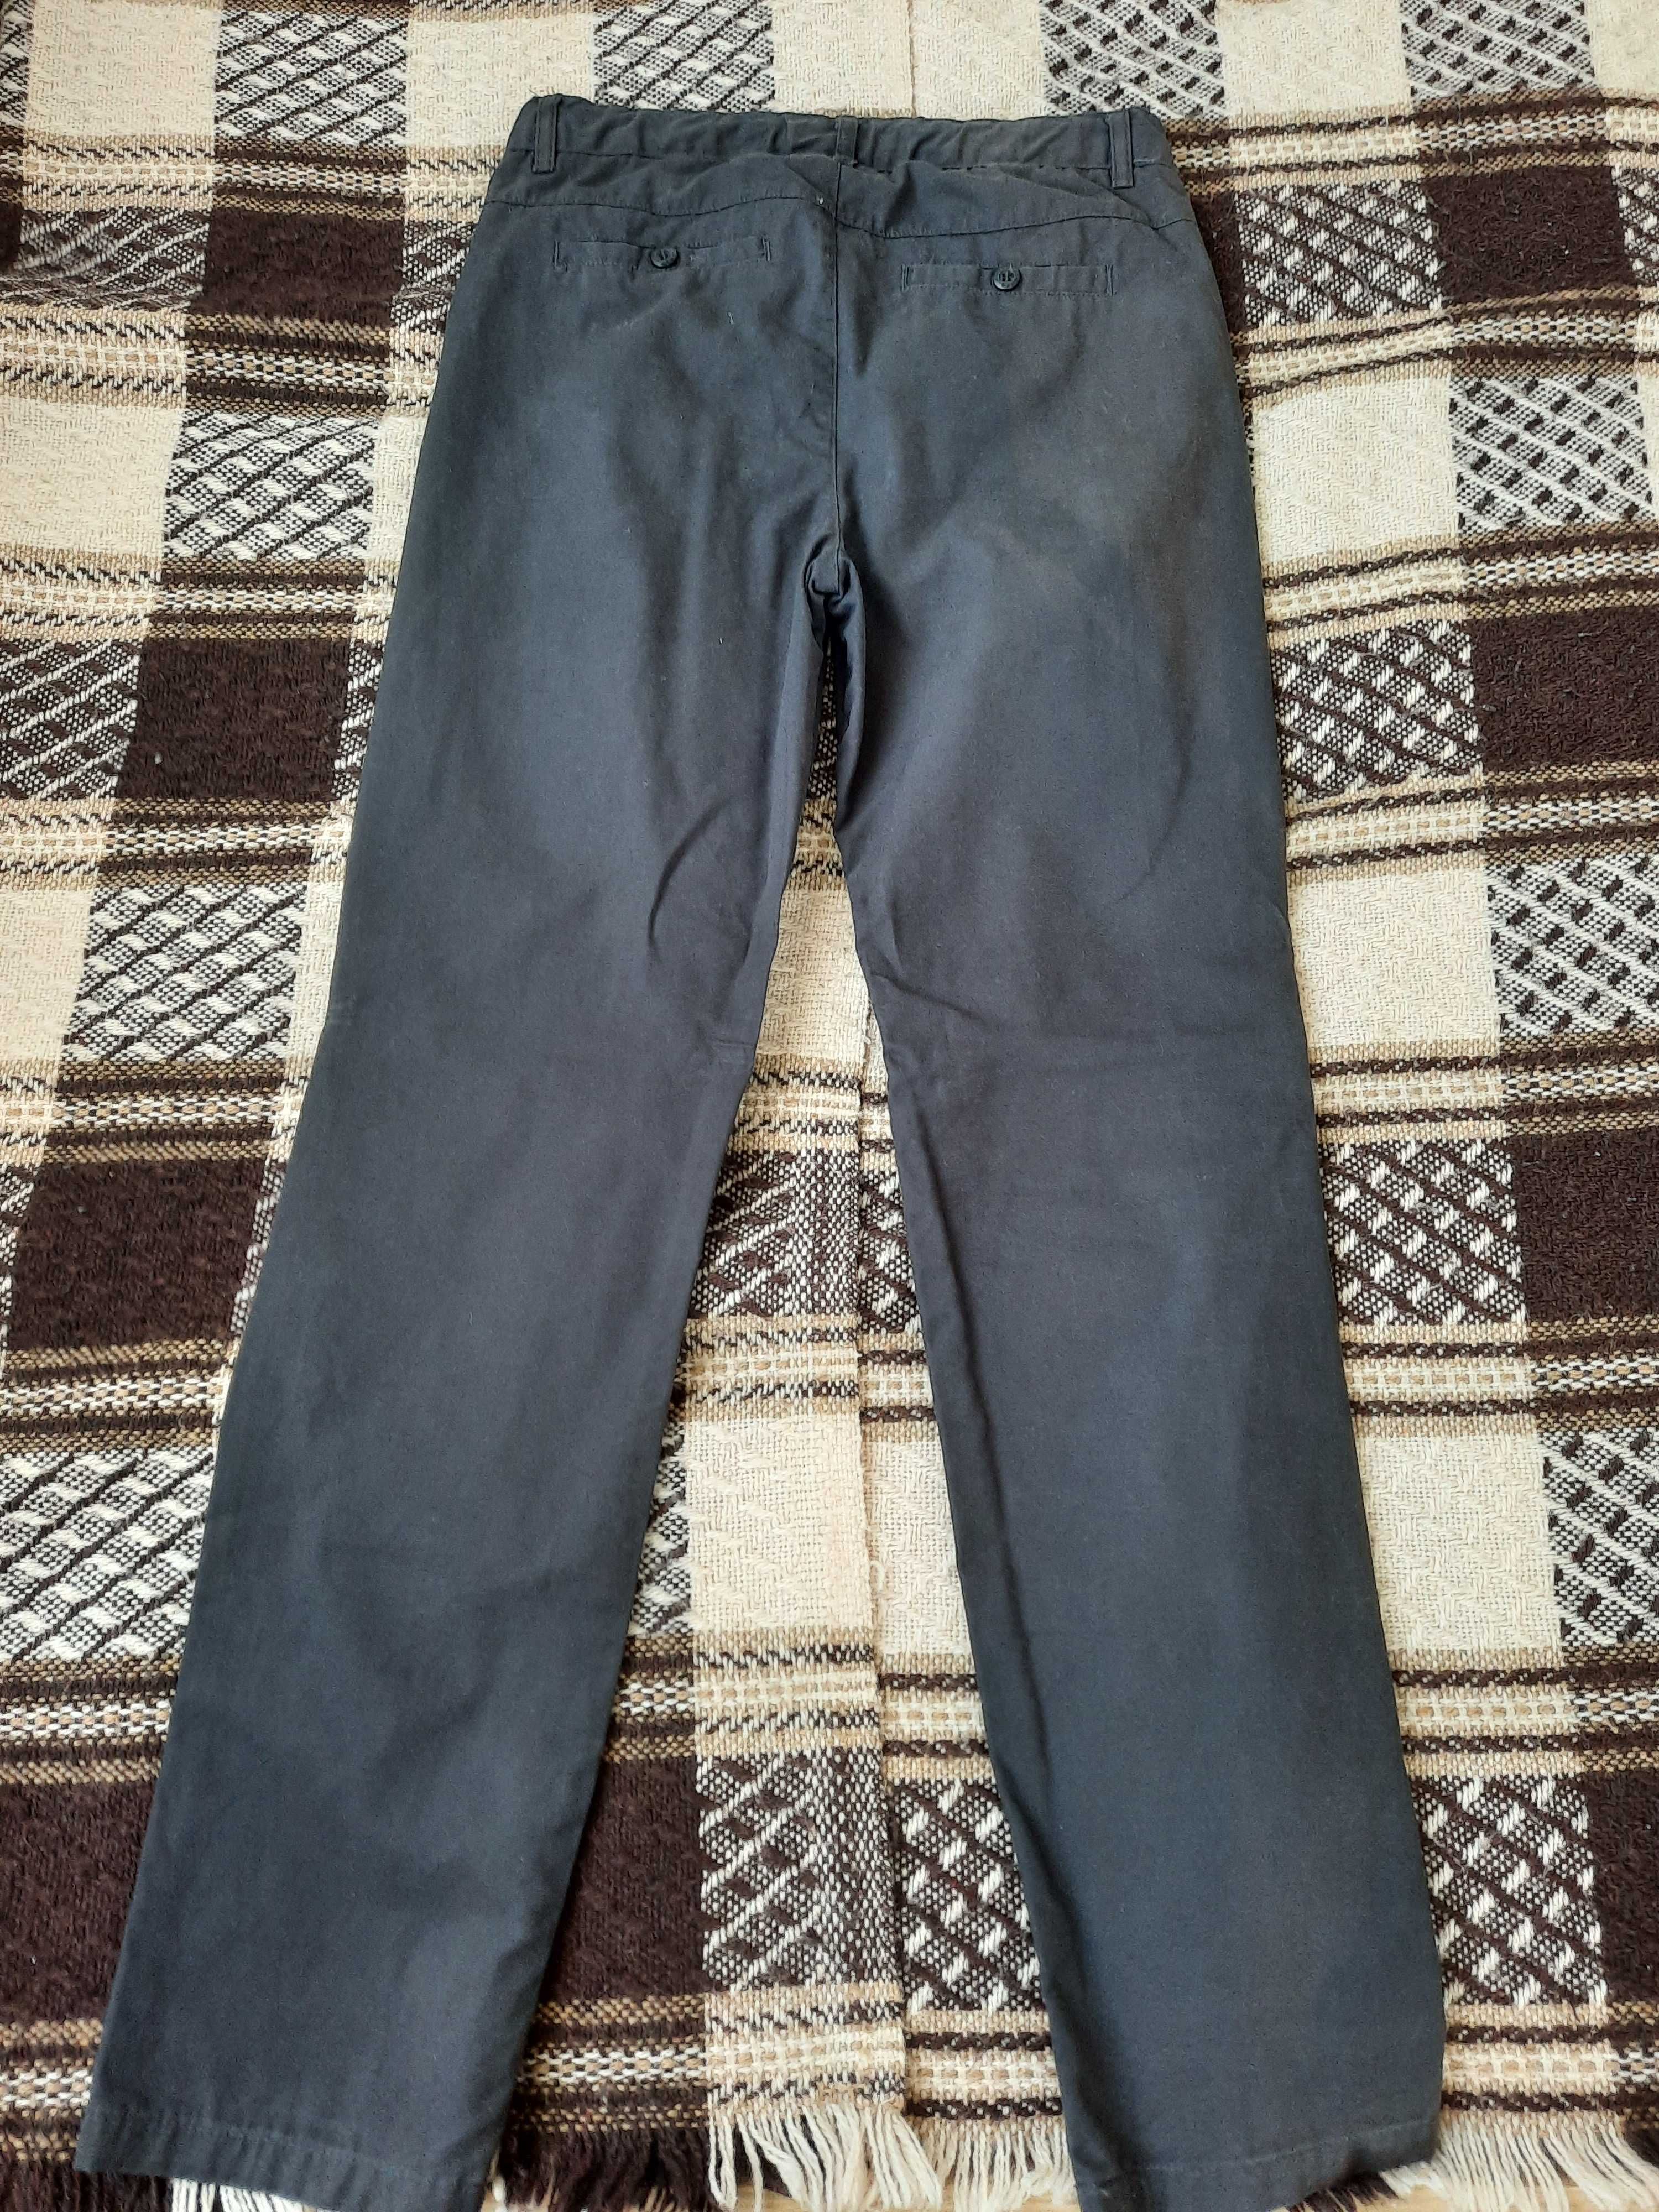 Spodnie dla chłopca Coccodrillo Elegant 146